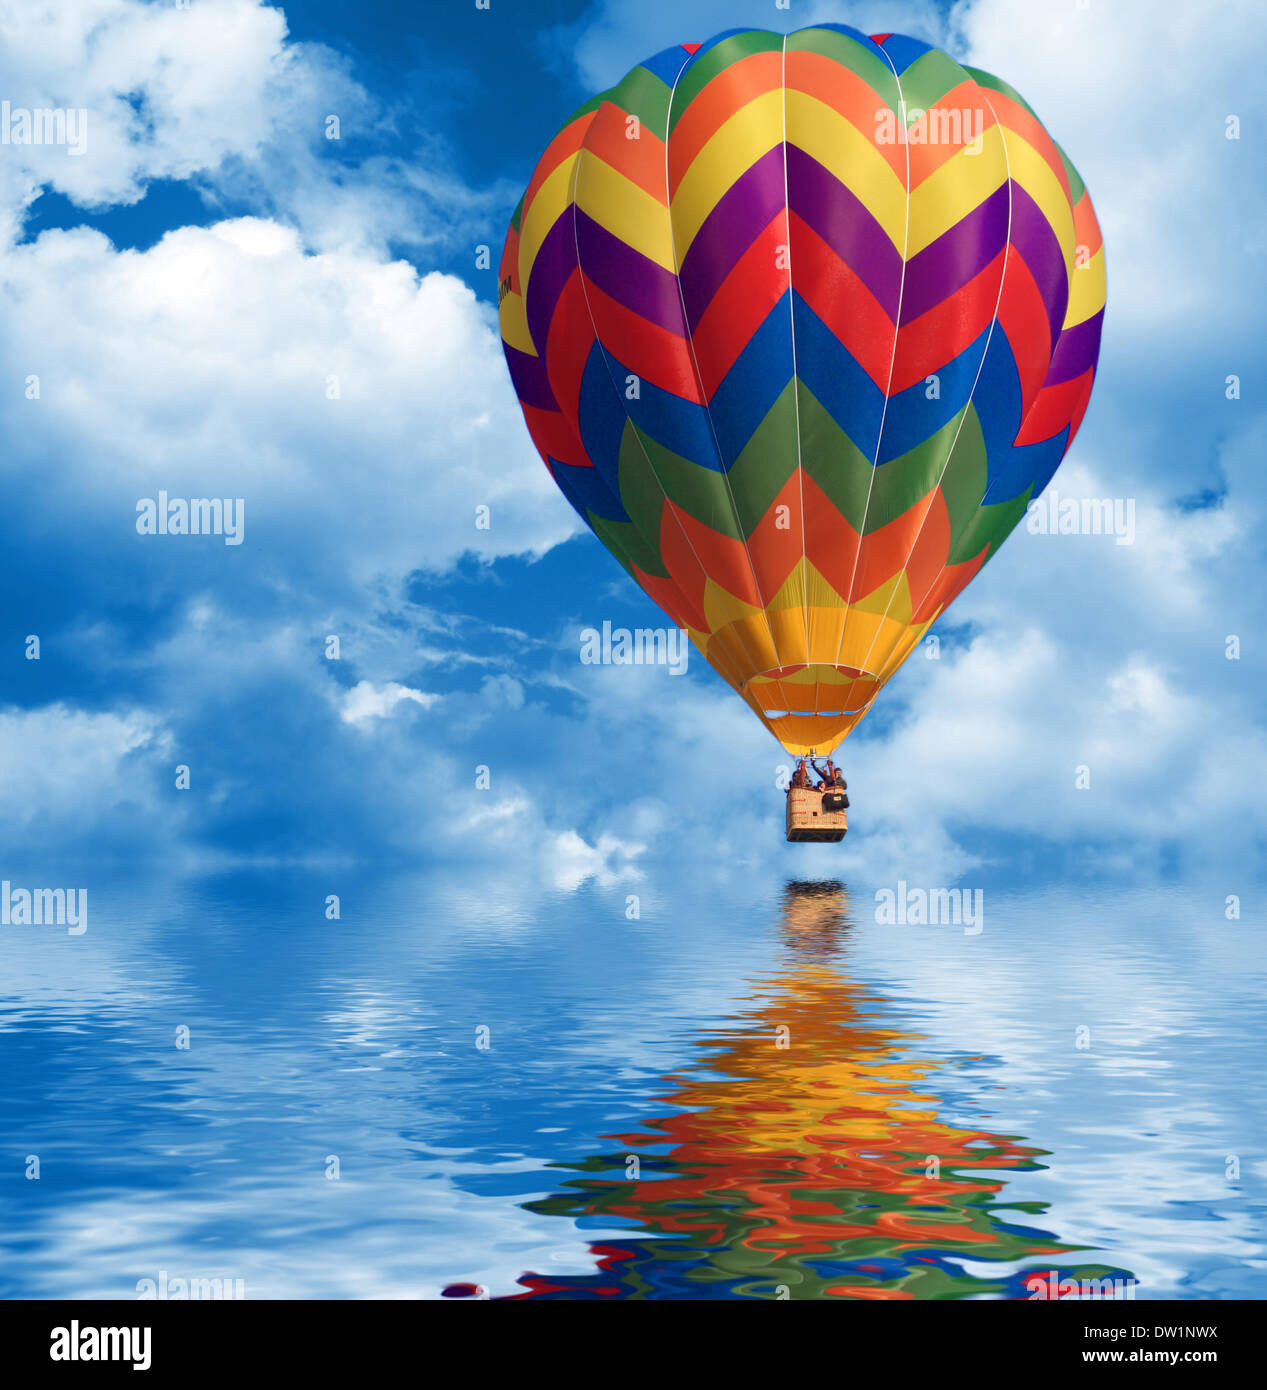 montgolfière pliée lumineuse volant dans le ciel bleu dans un